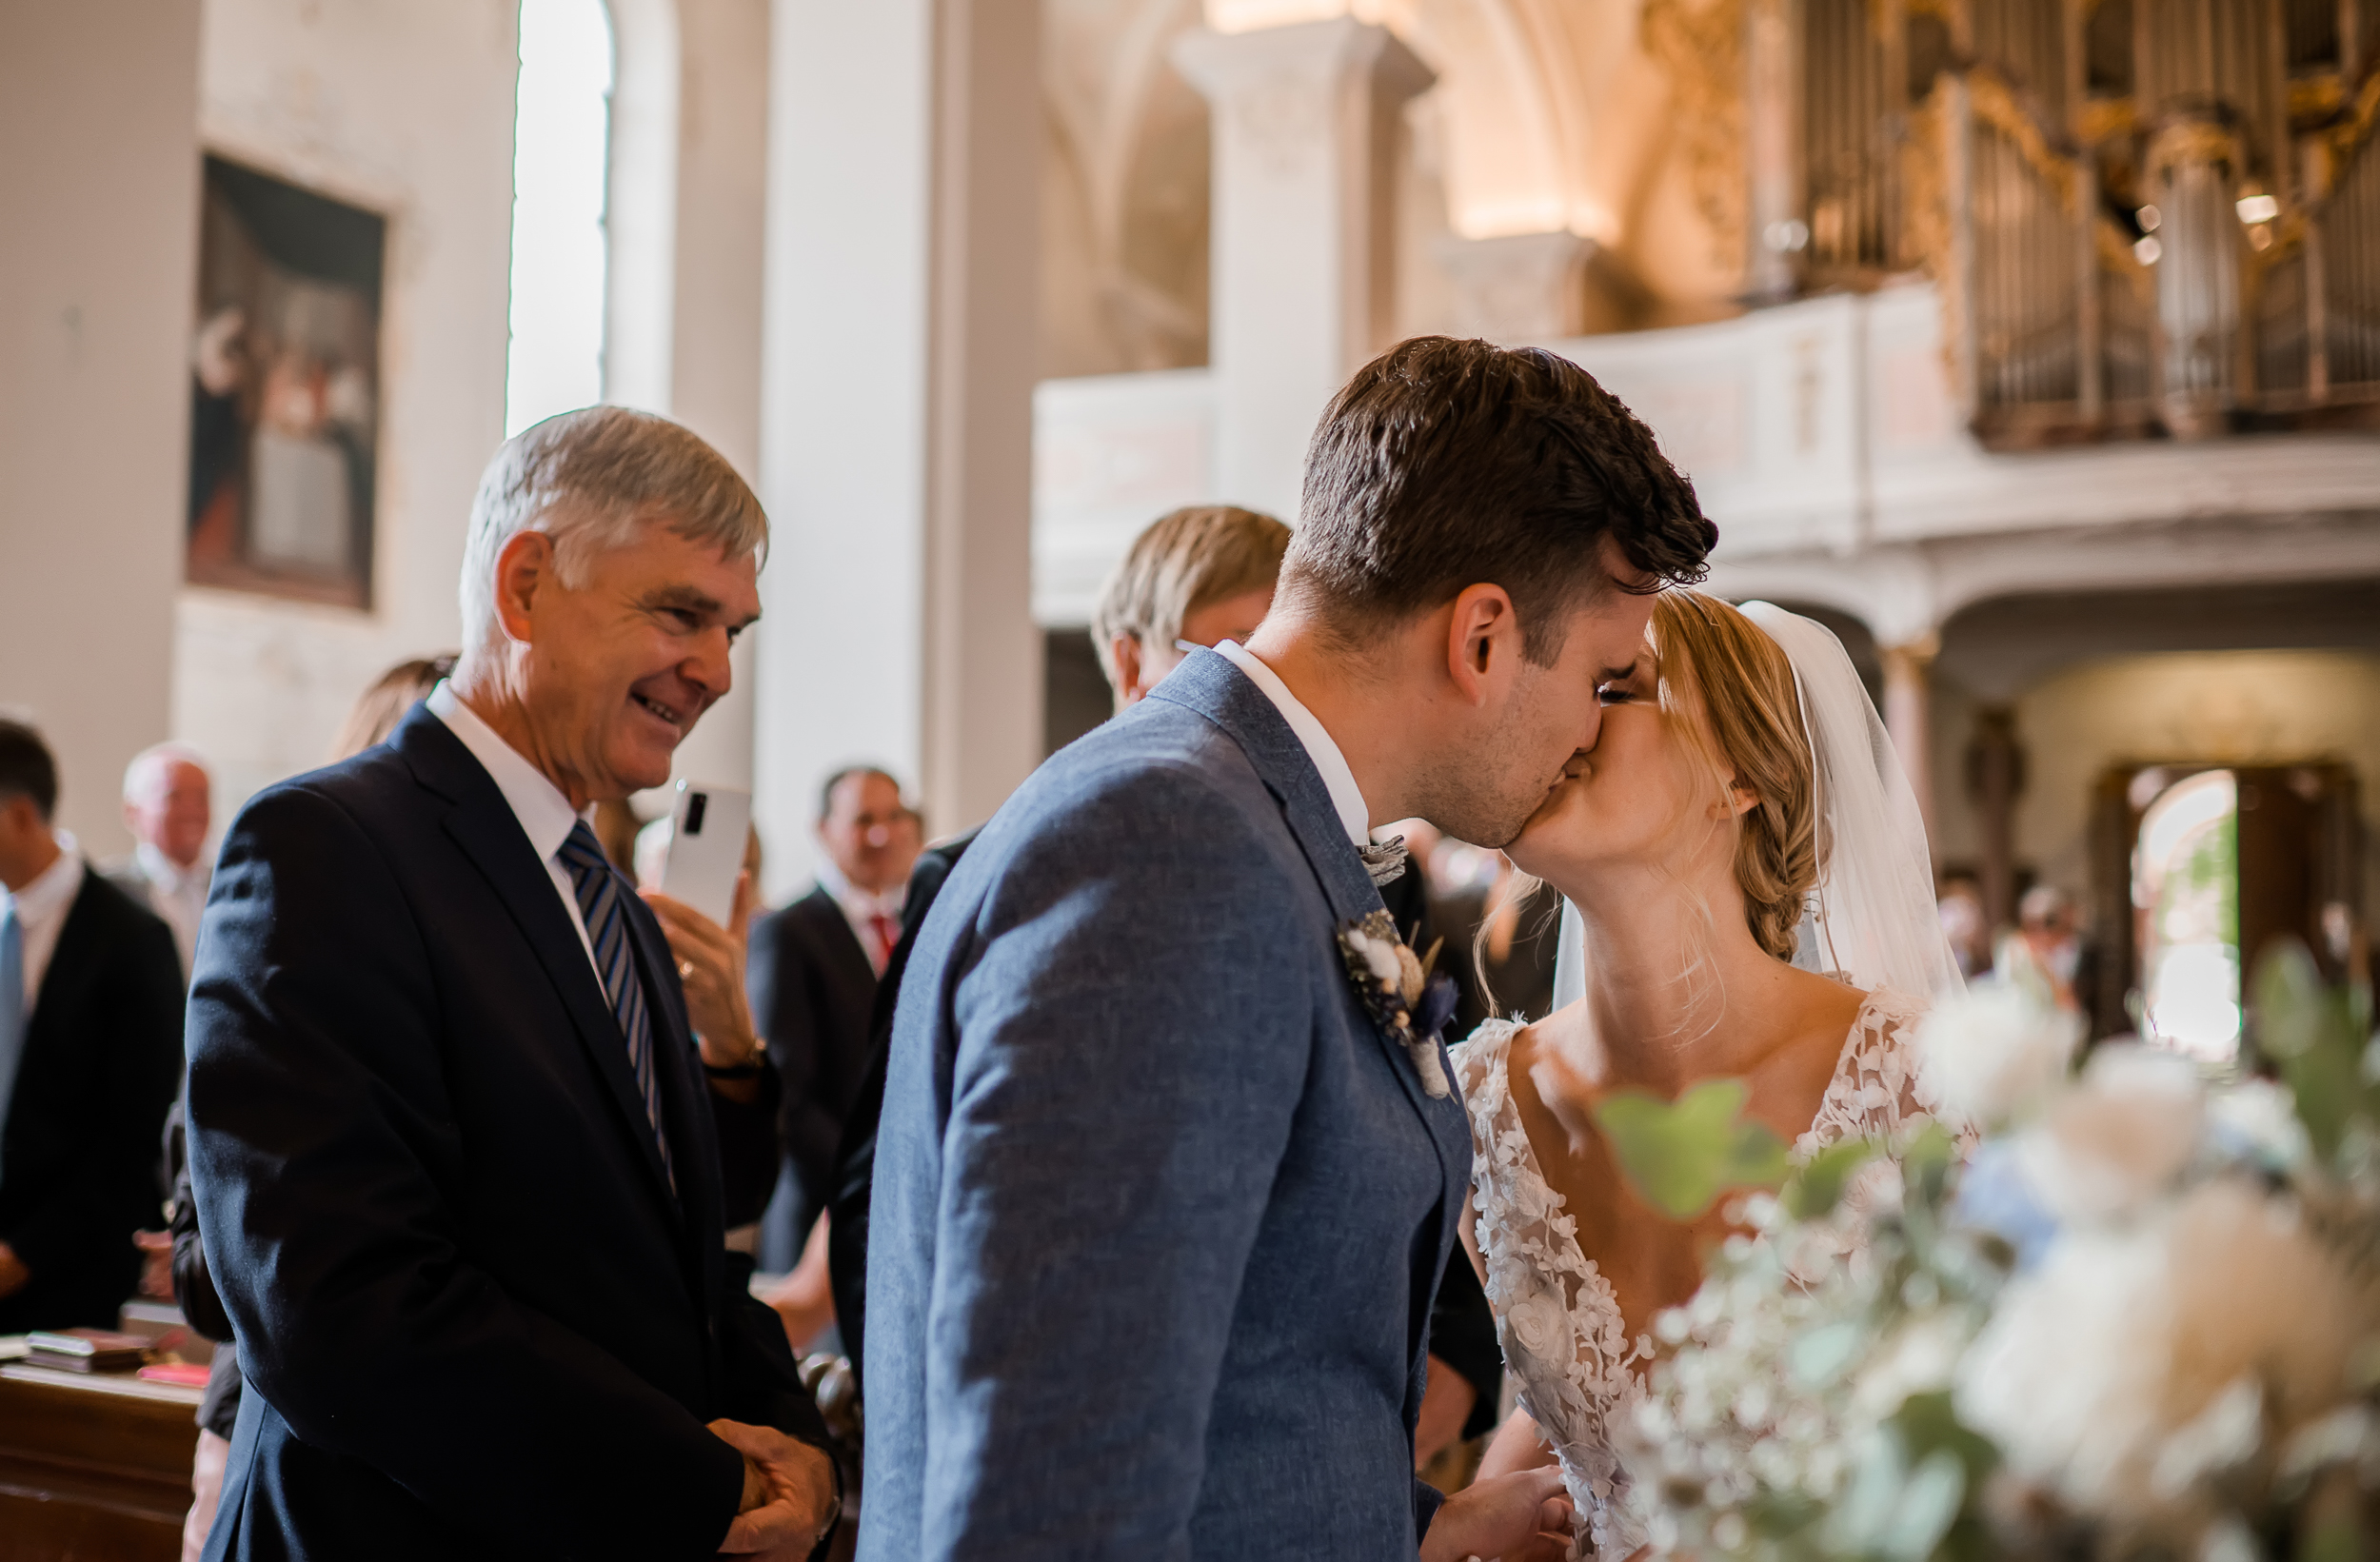 Kirchliche Trauung in der Wallfahrtskirche Todtmoos, der Bräutigam küsst die Braut im Altar bei der Zeremonie. Fotografiert von der Hochzeitsfotografin Isabela Campos.